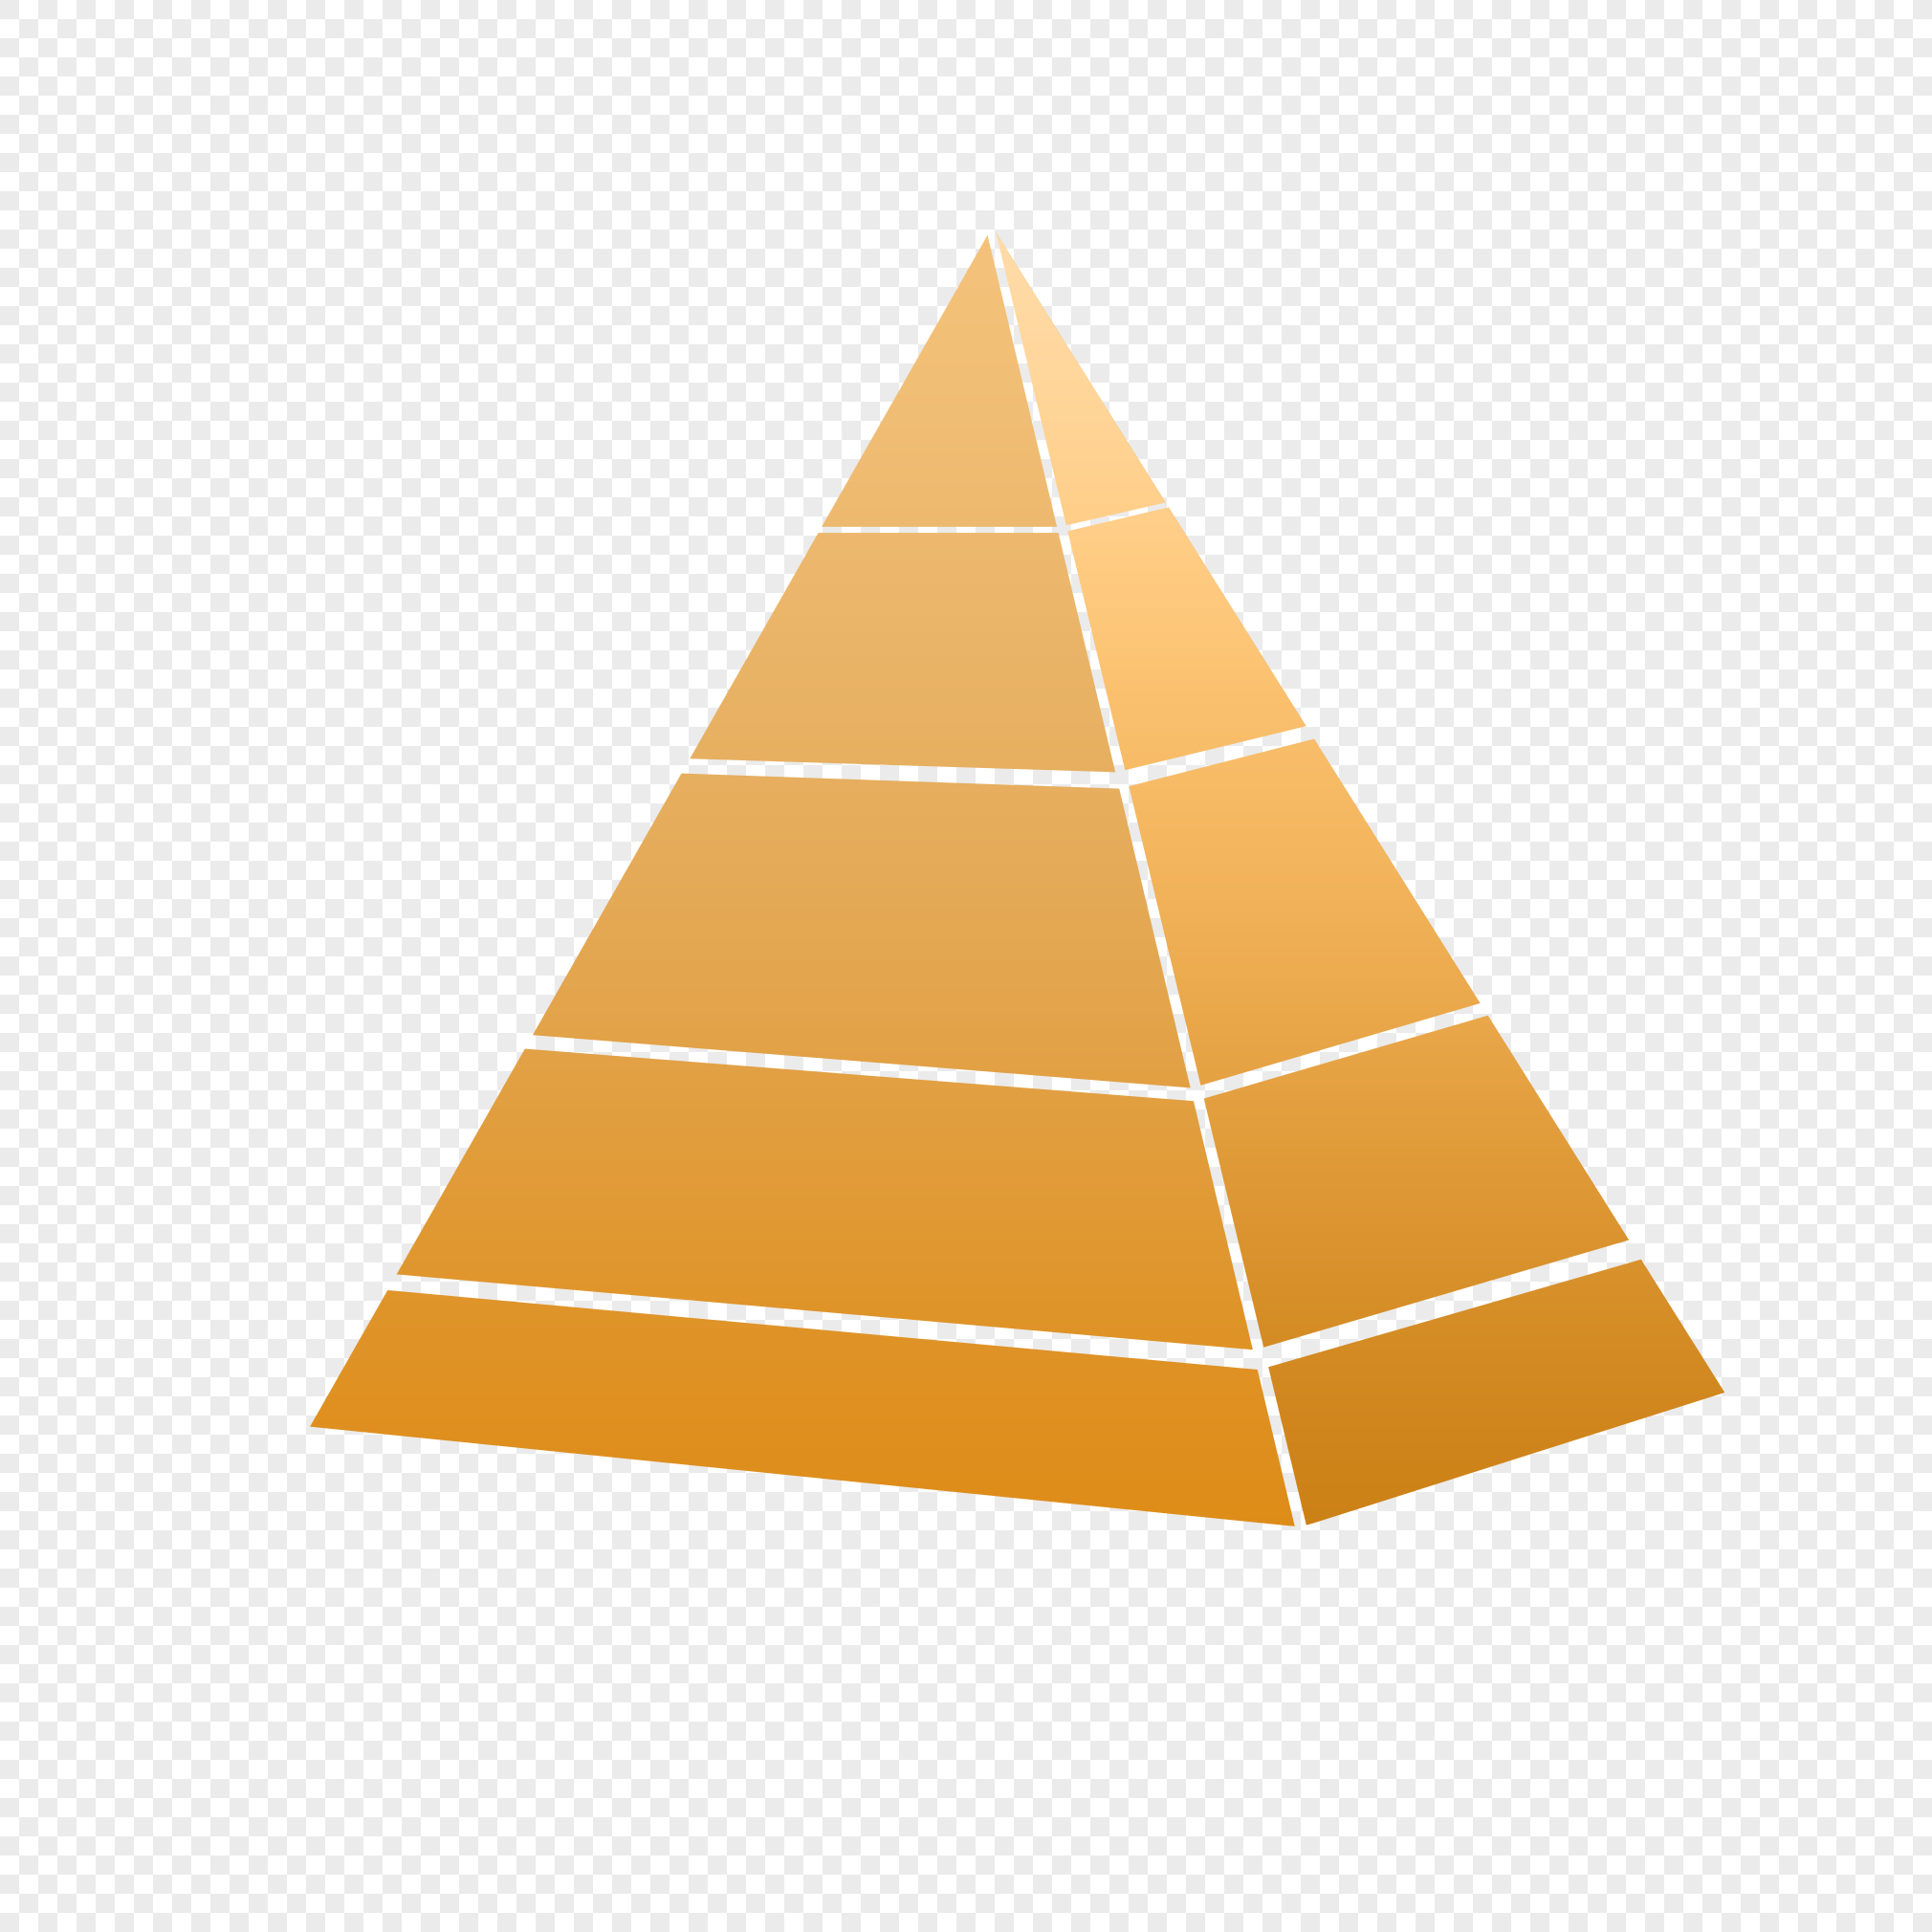 Оранжевая пирамида картинка для детей на прозрачном фоне